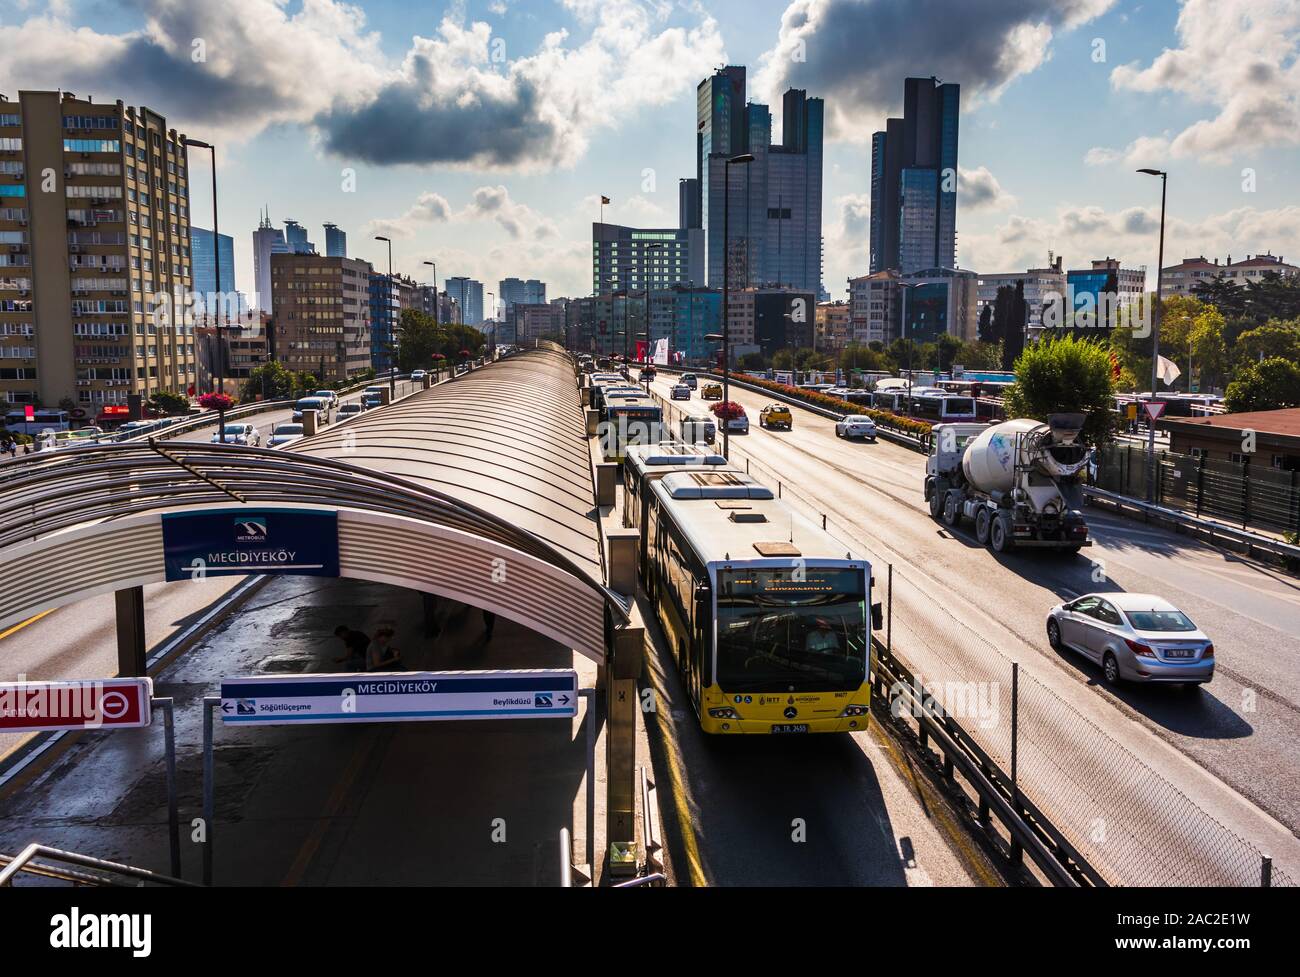 3 septembre 2019 ; un grand angle de vue sur la station de métro Bus Mecidiyekoy avec les gratte-ciel sur l'arrière-plan dans une journée ensoleillée, Istanbul Turke Banque D'Images